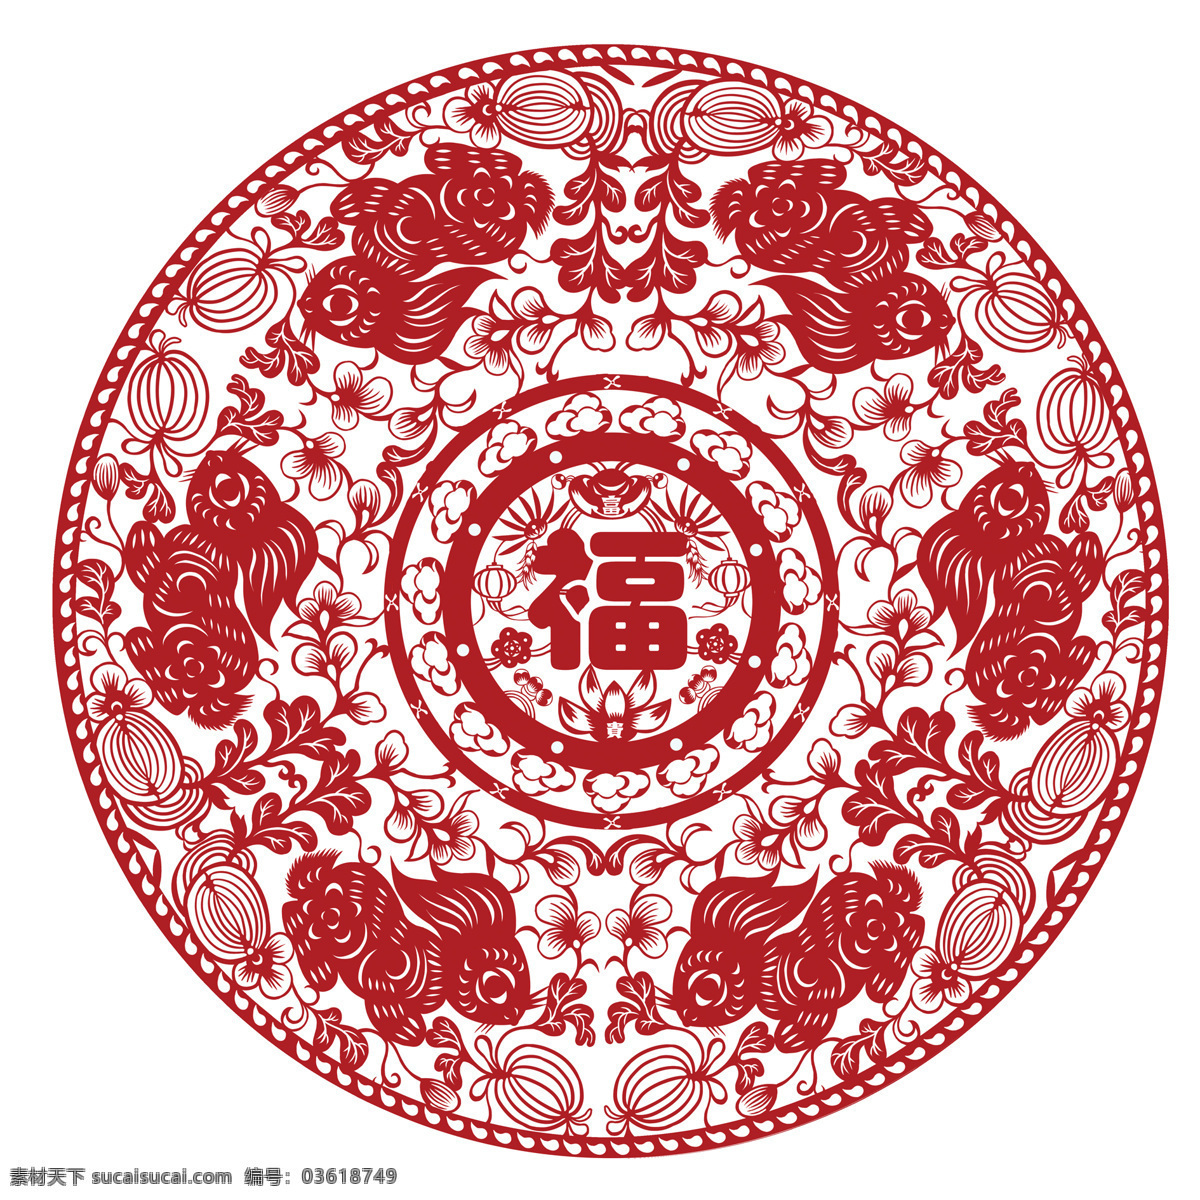 传统文化 红色 剪纸 民俗 生肖 兔年 兔子 兔 设计素材 模板下载 剪纸兔 文化艺术